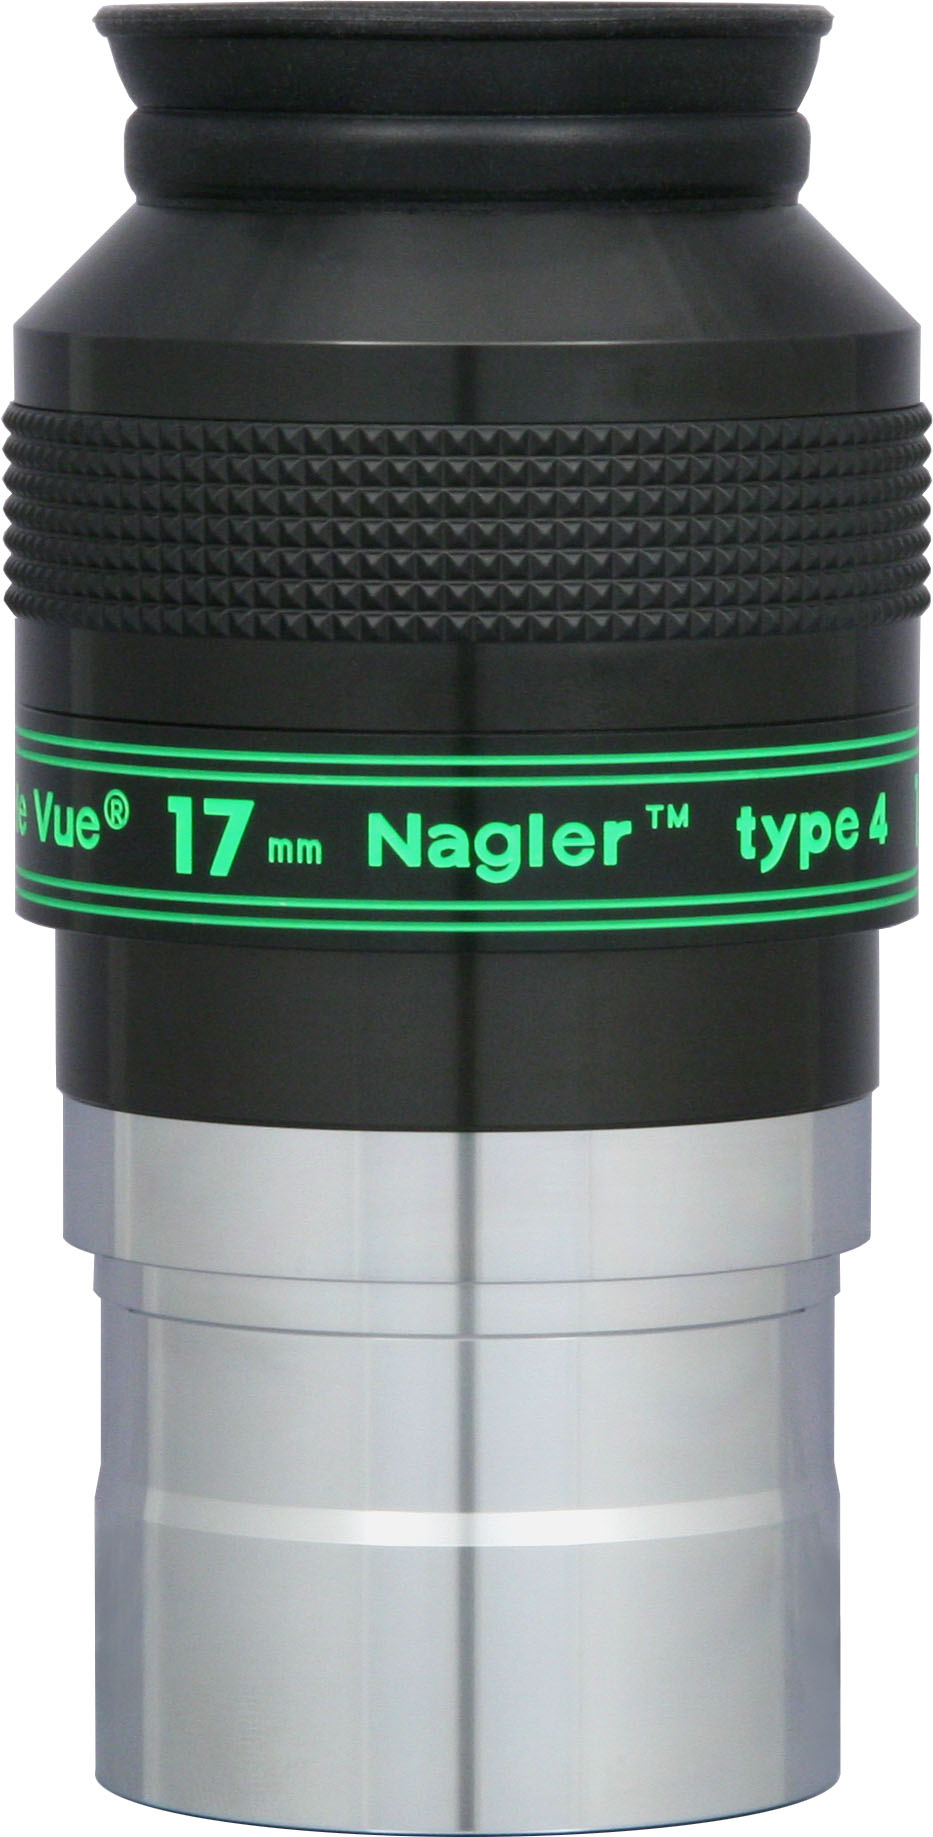 Nagler 17mm Eyepiece